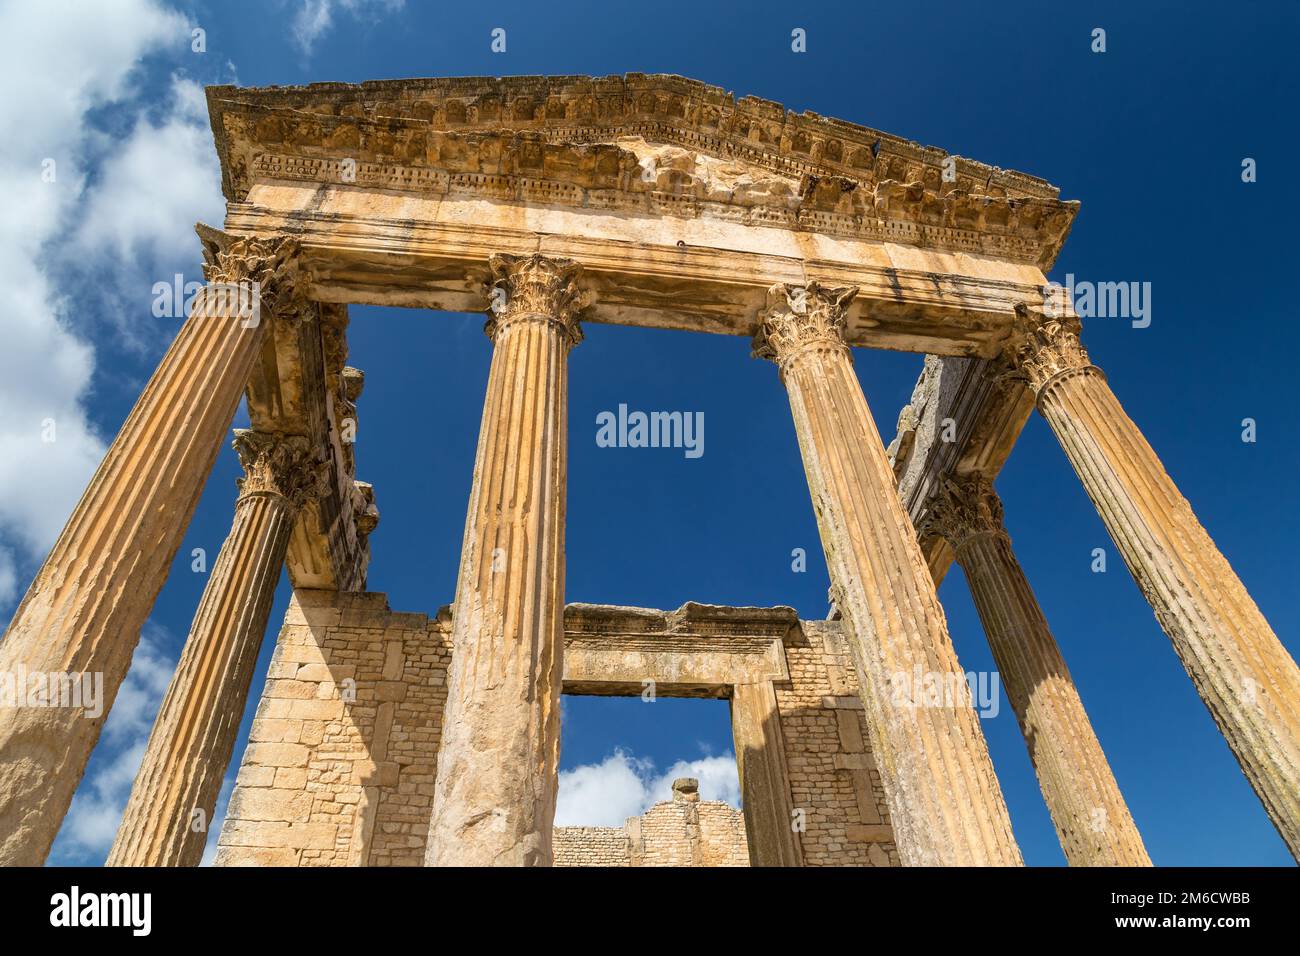 Ruines des temples romains de Dougga, Tunisie. Patrimoine mondial de l'UNESCO Banque D'Images